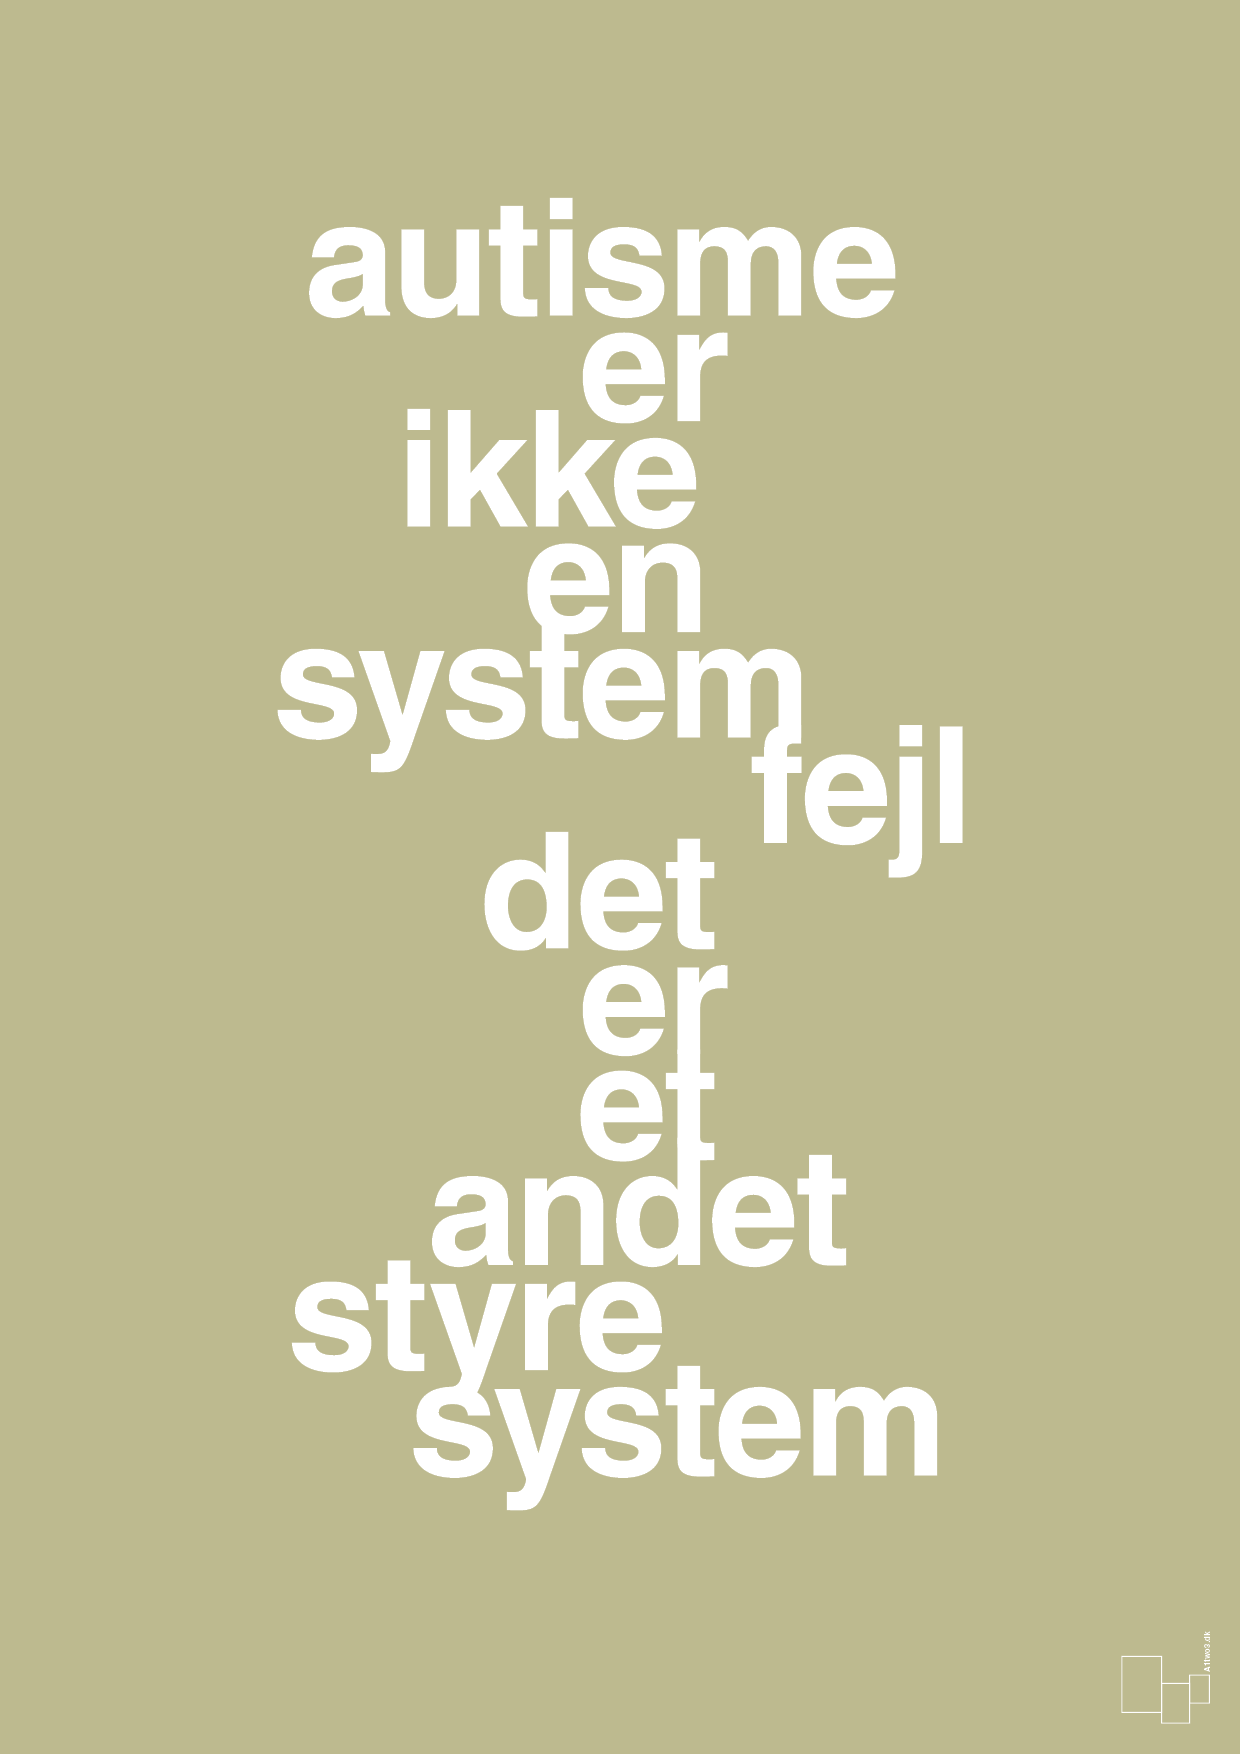 autisme er ikke en systemfejl - Plakat med Samfund i Back to Nature